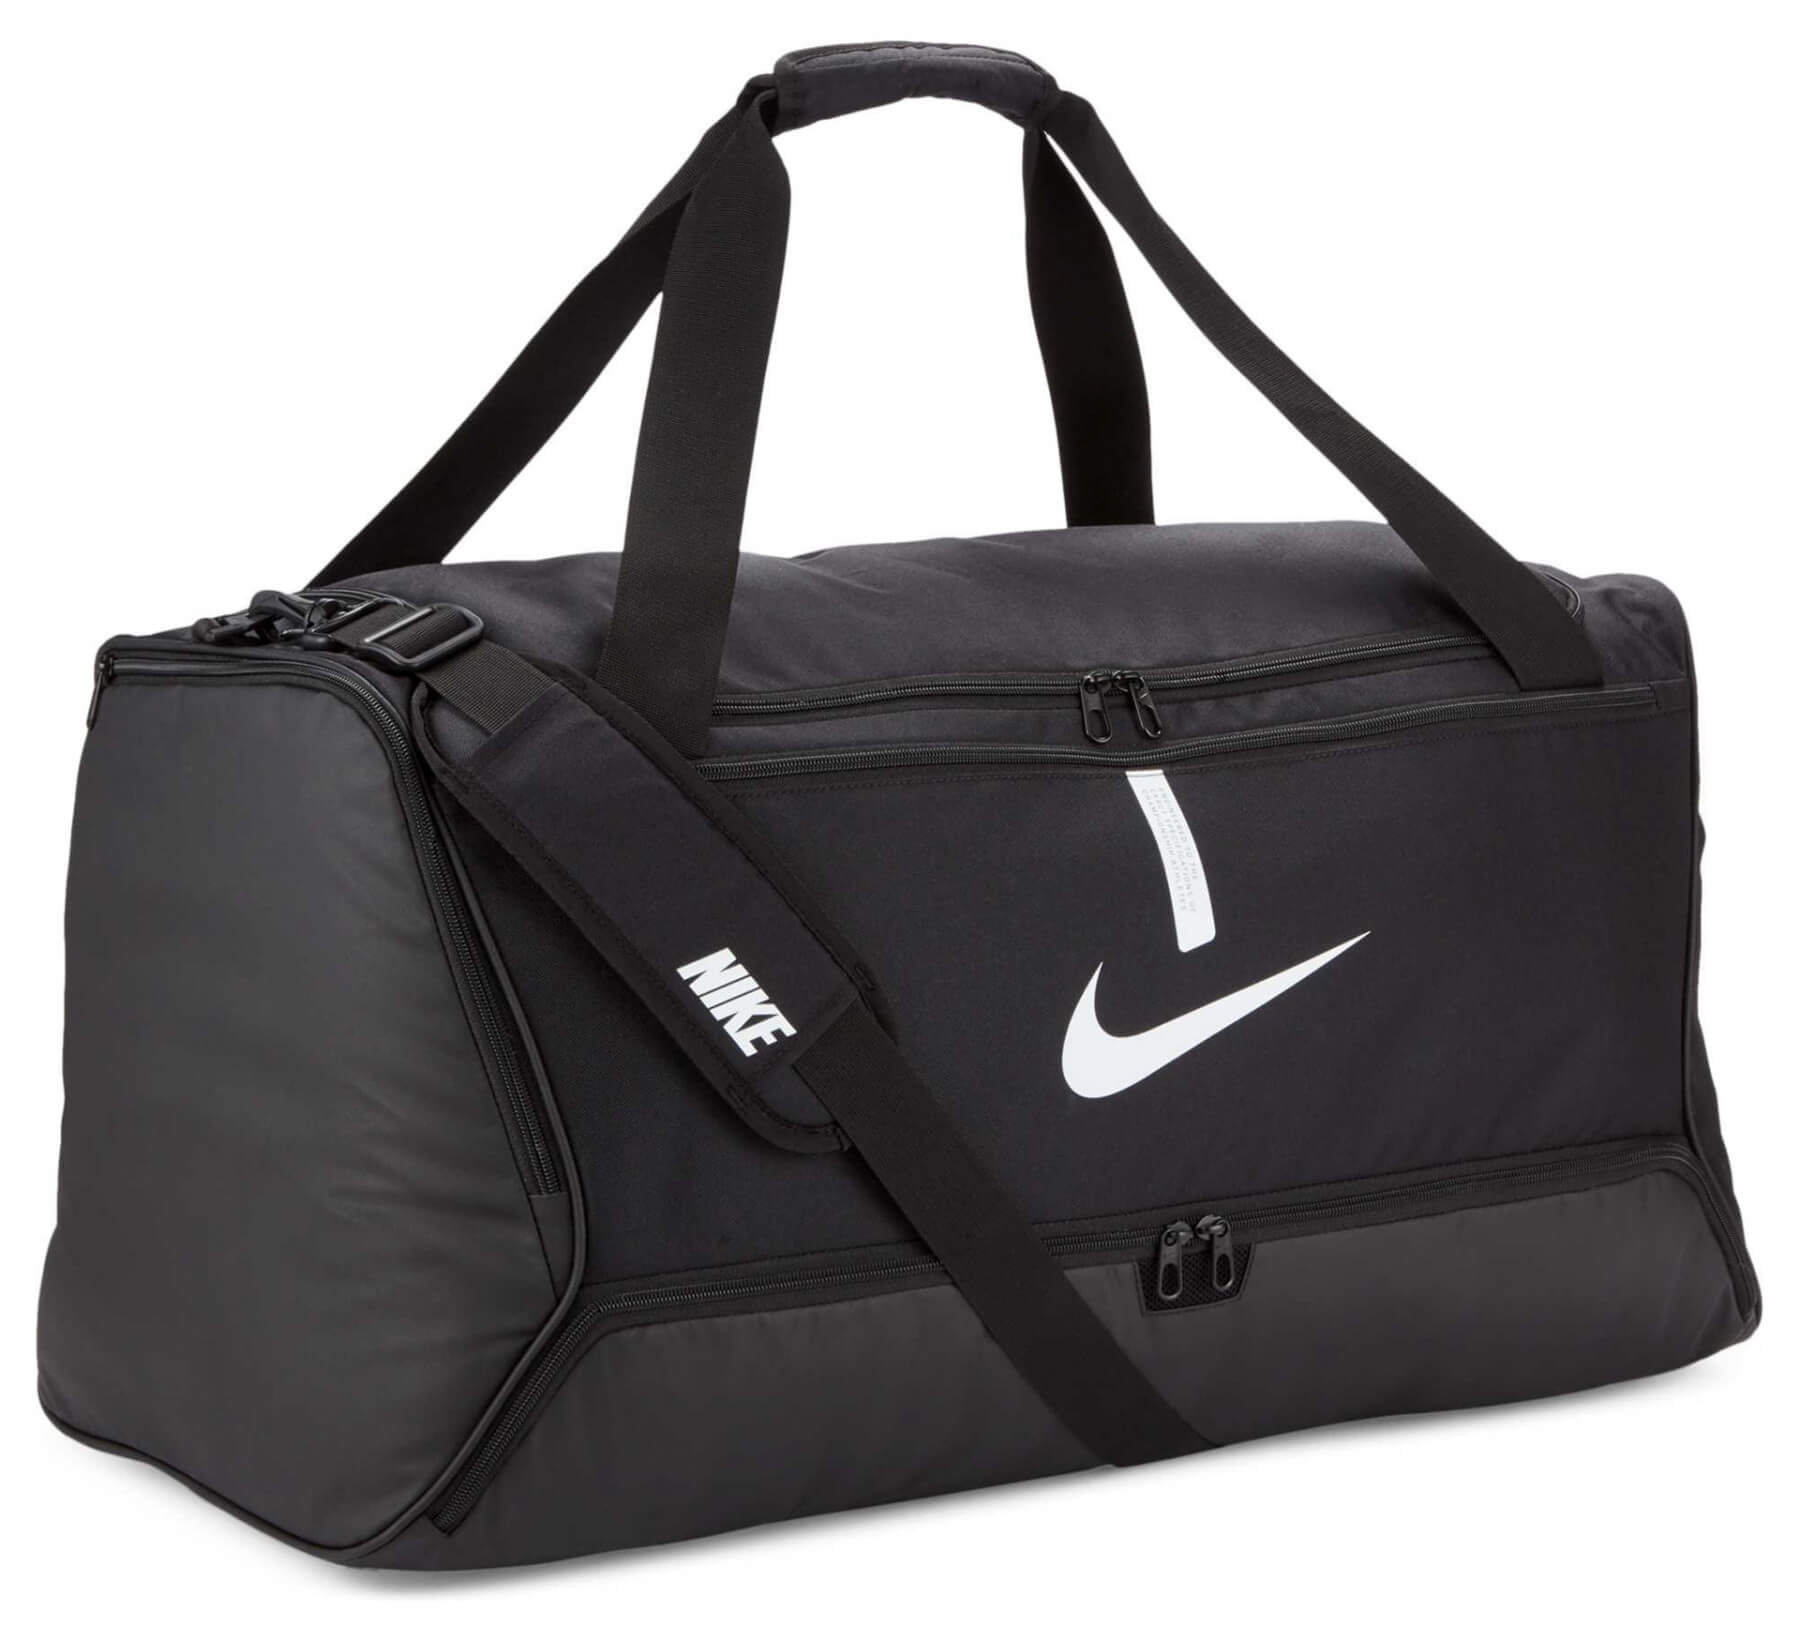 Destructief saai Detecteerbaar Nike sporttassen bedrukken - Vanaf 1 stuk met elk gewenst ontwerp!